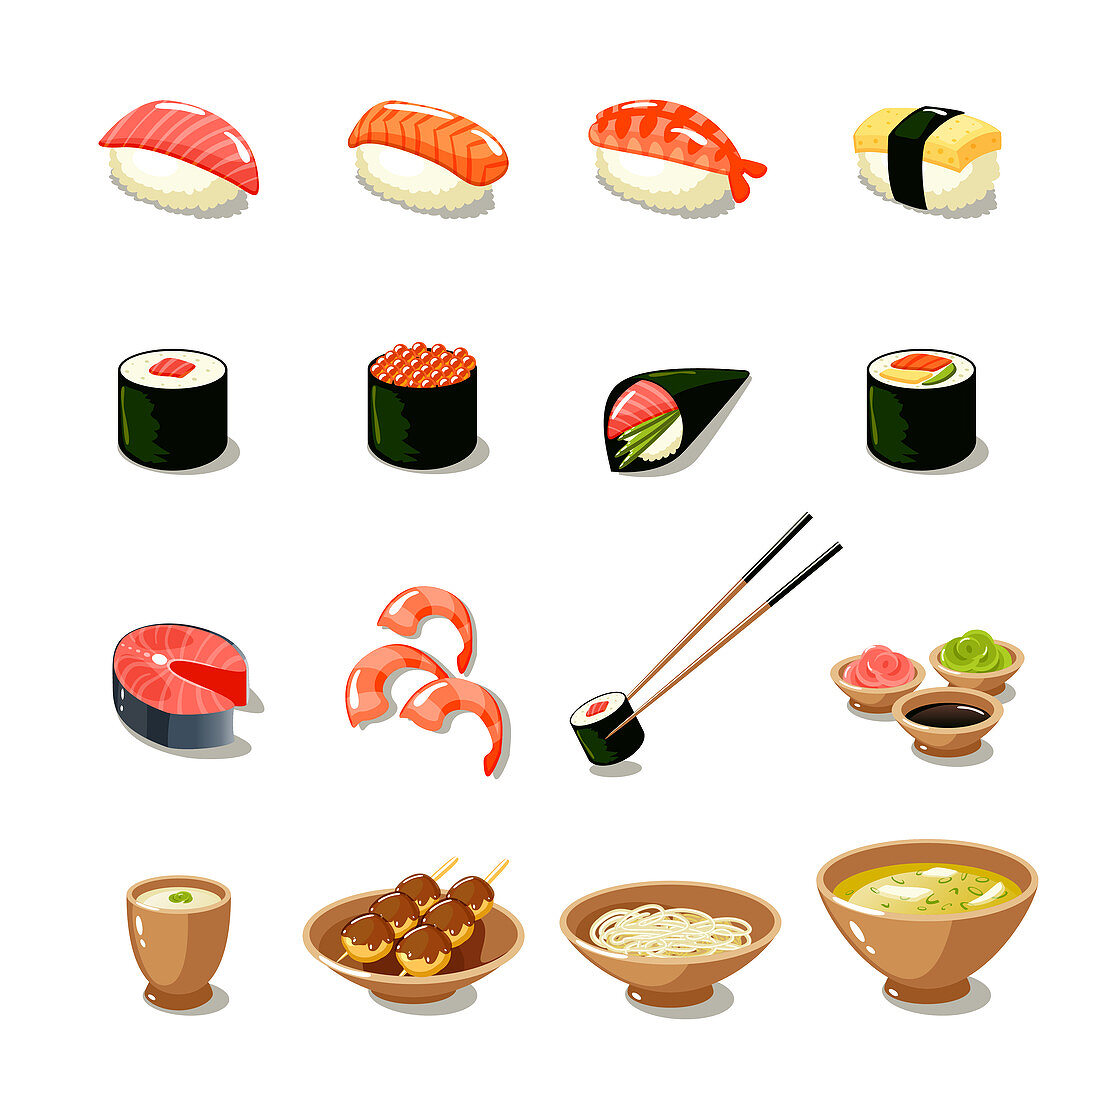 Japanese food, illustration